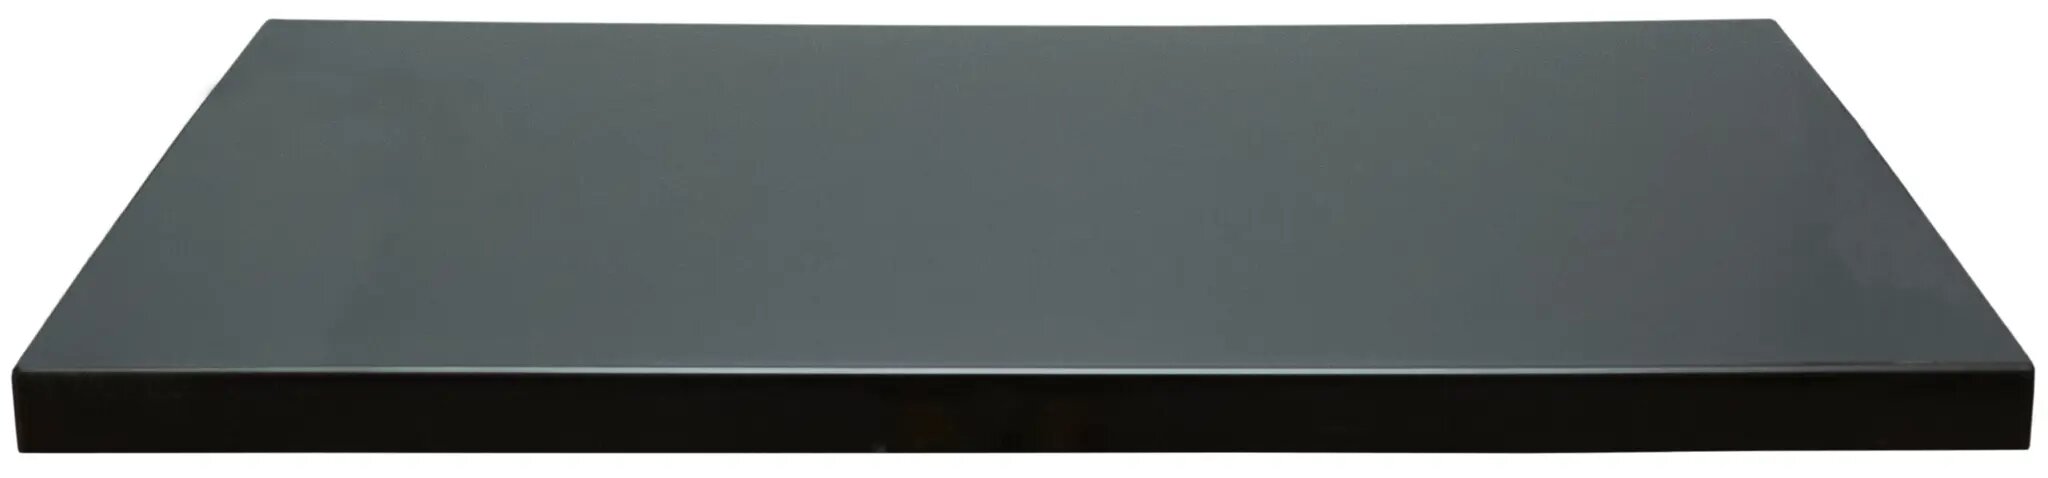 Столешница Scandi 47x100x4 см литьевой мрамор цвет черный